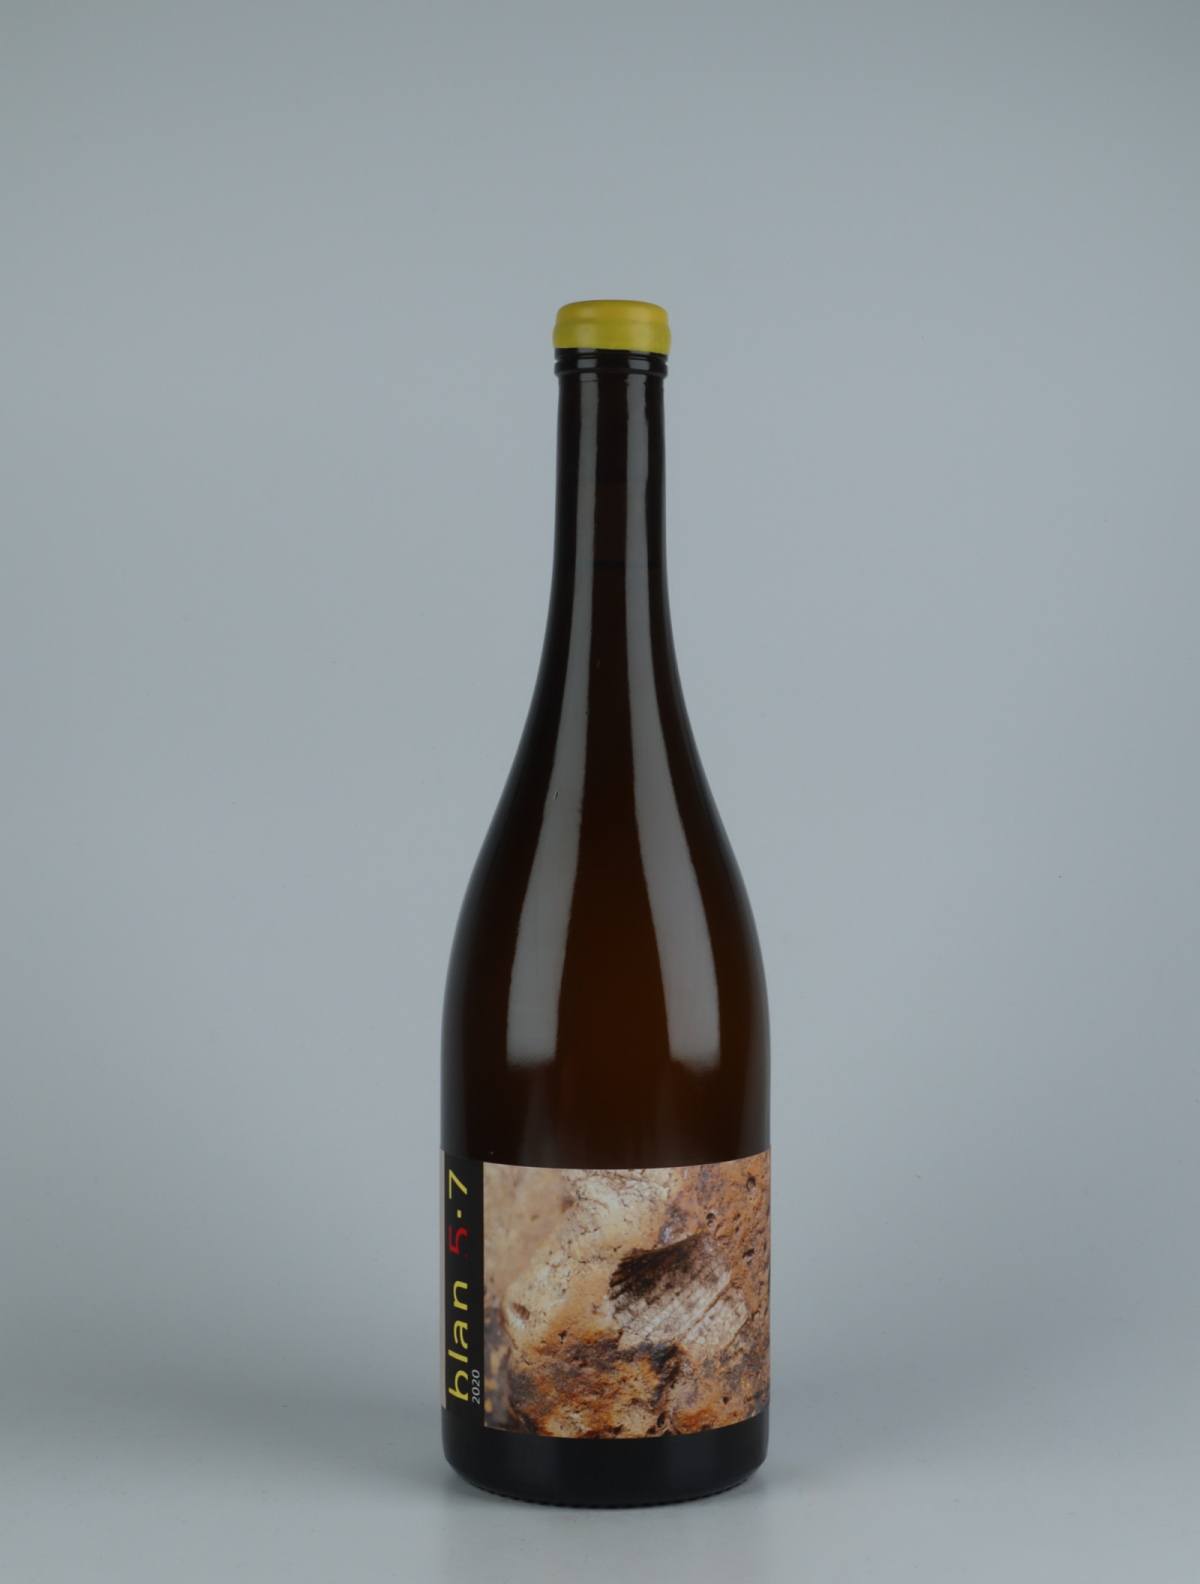 A bottle 2020 Blan 5-7 Orange wine from Jordi Llorens, Catalonia in Spain